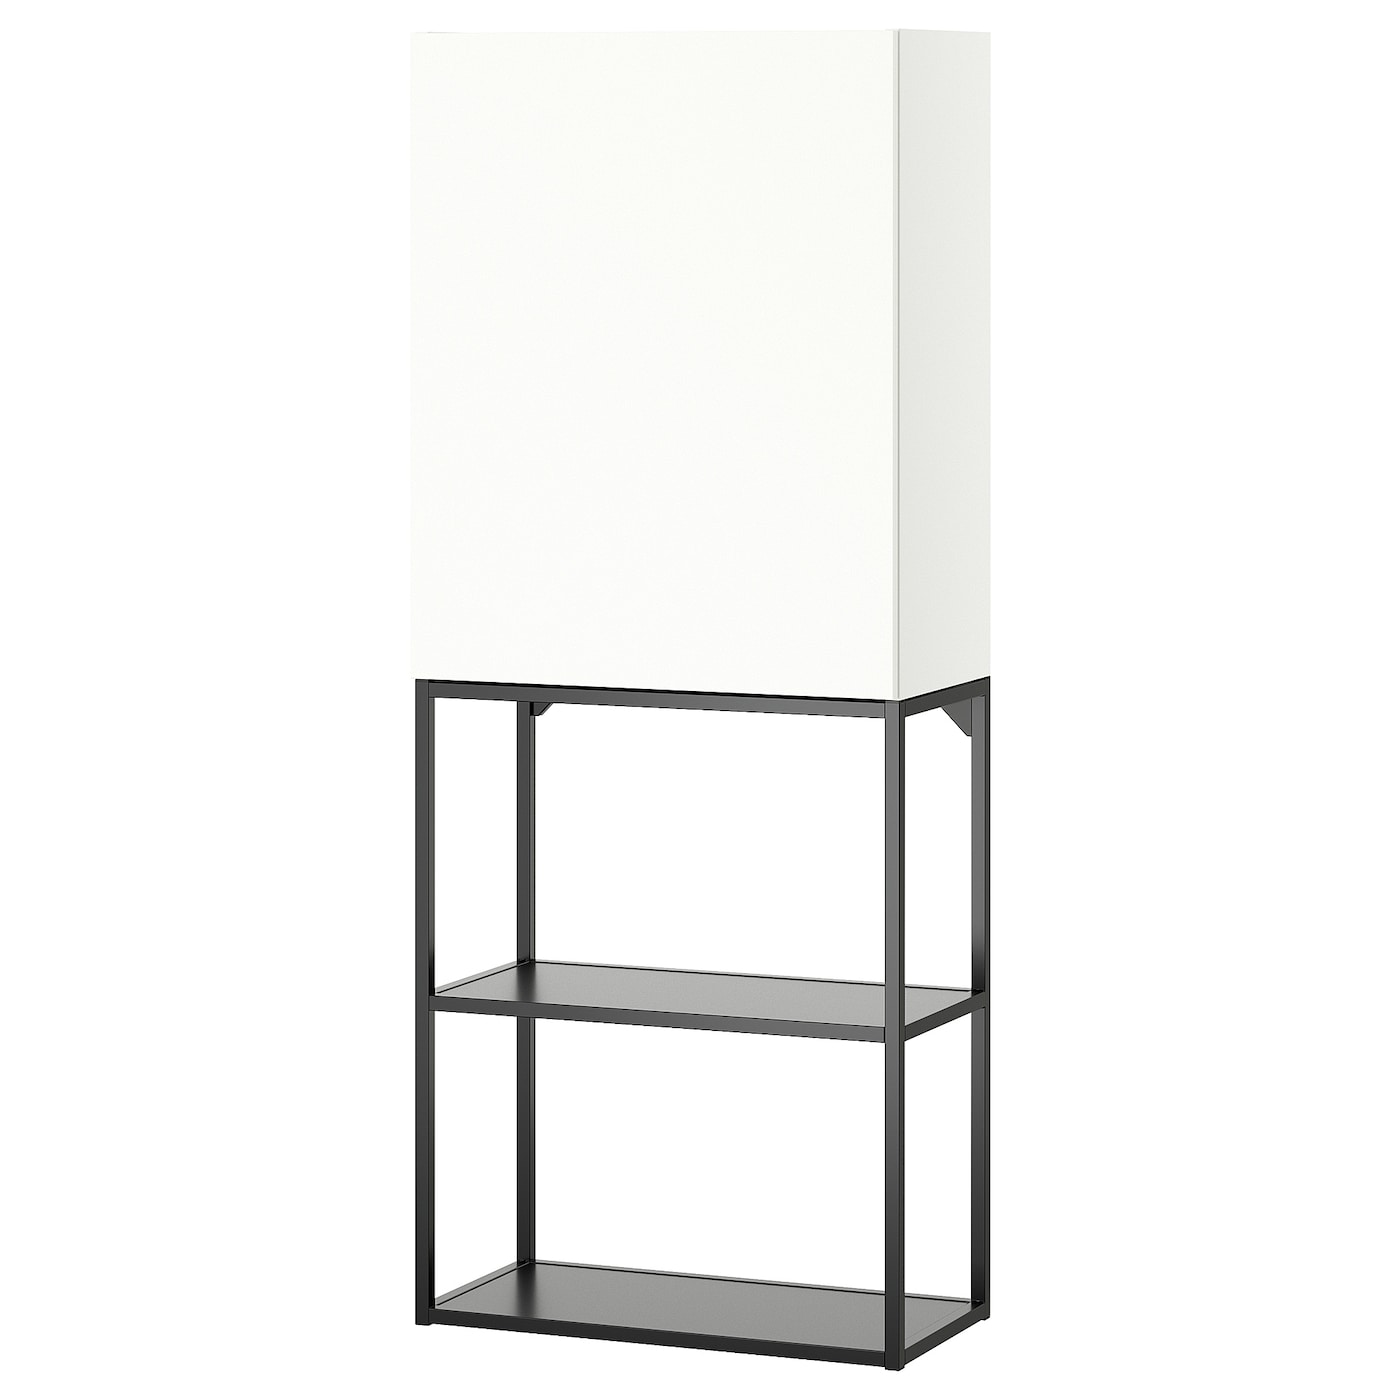 Навесной шкаф - ENHET IKEA/ ЭНХЕТ ИКЕА,   60x32x150 см, белый/черный